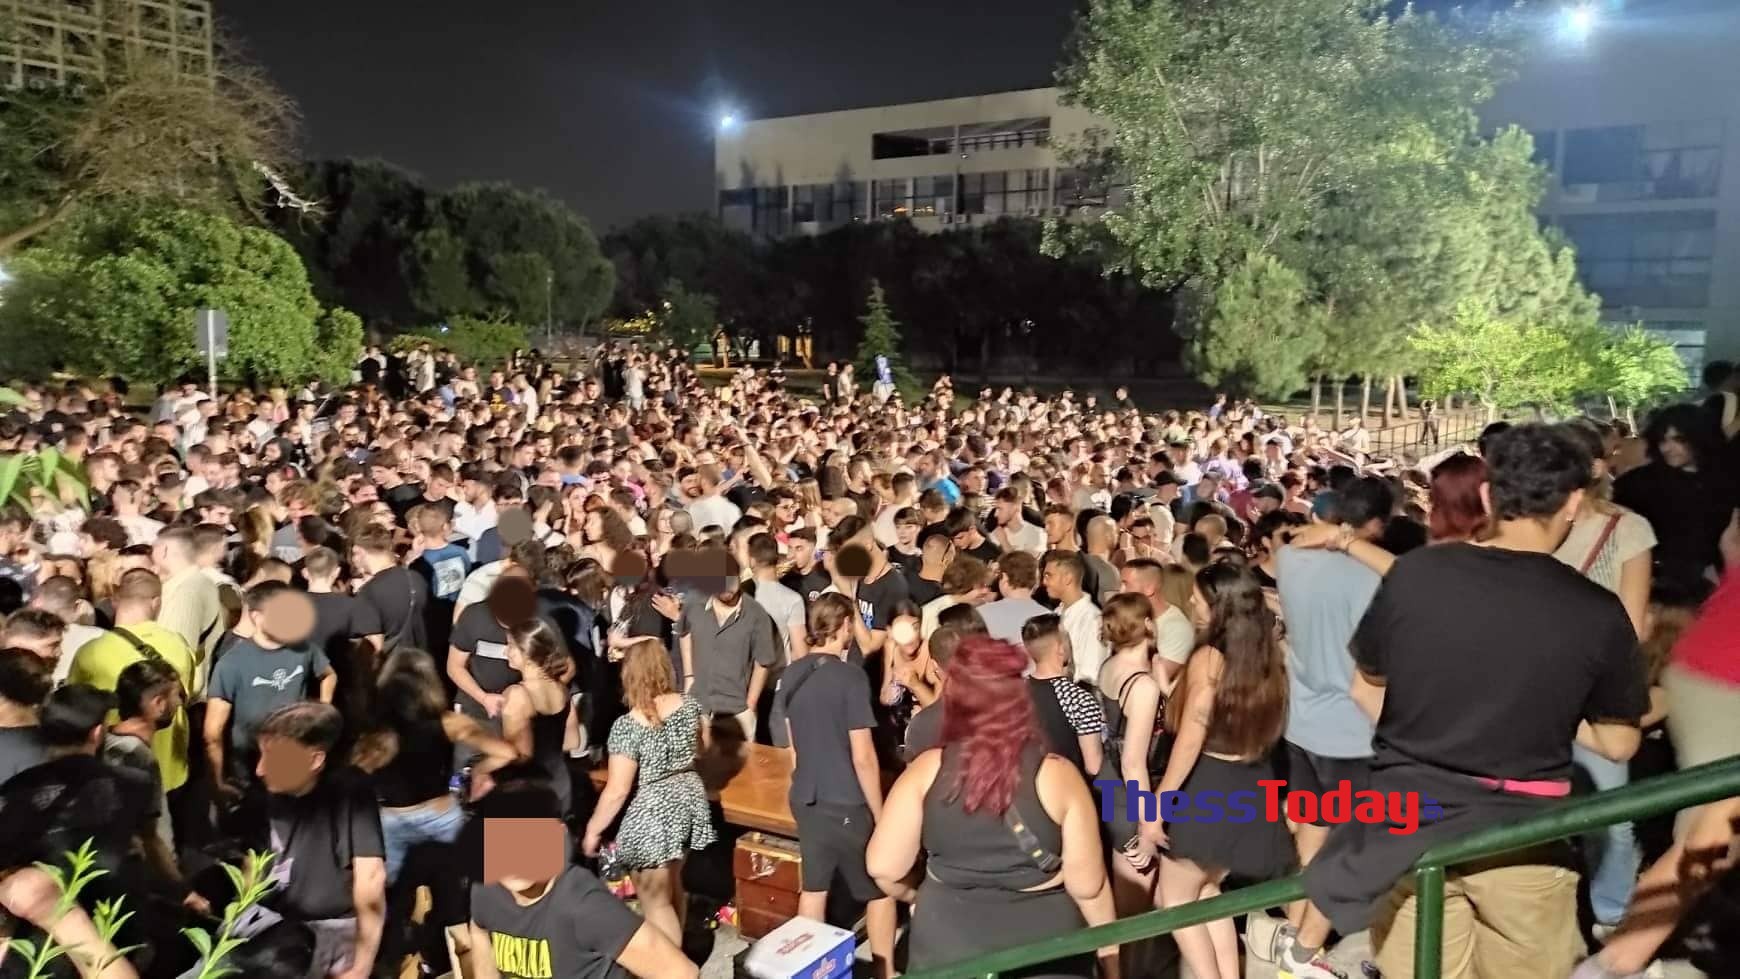 ΑΠΘ: Πάρτι 1.500 ατόμων στην πανεπιστημιούπολη παρουσία της αστυνομίας